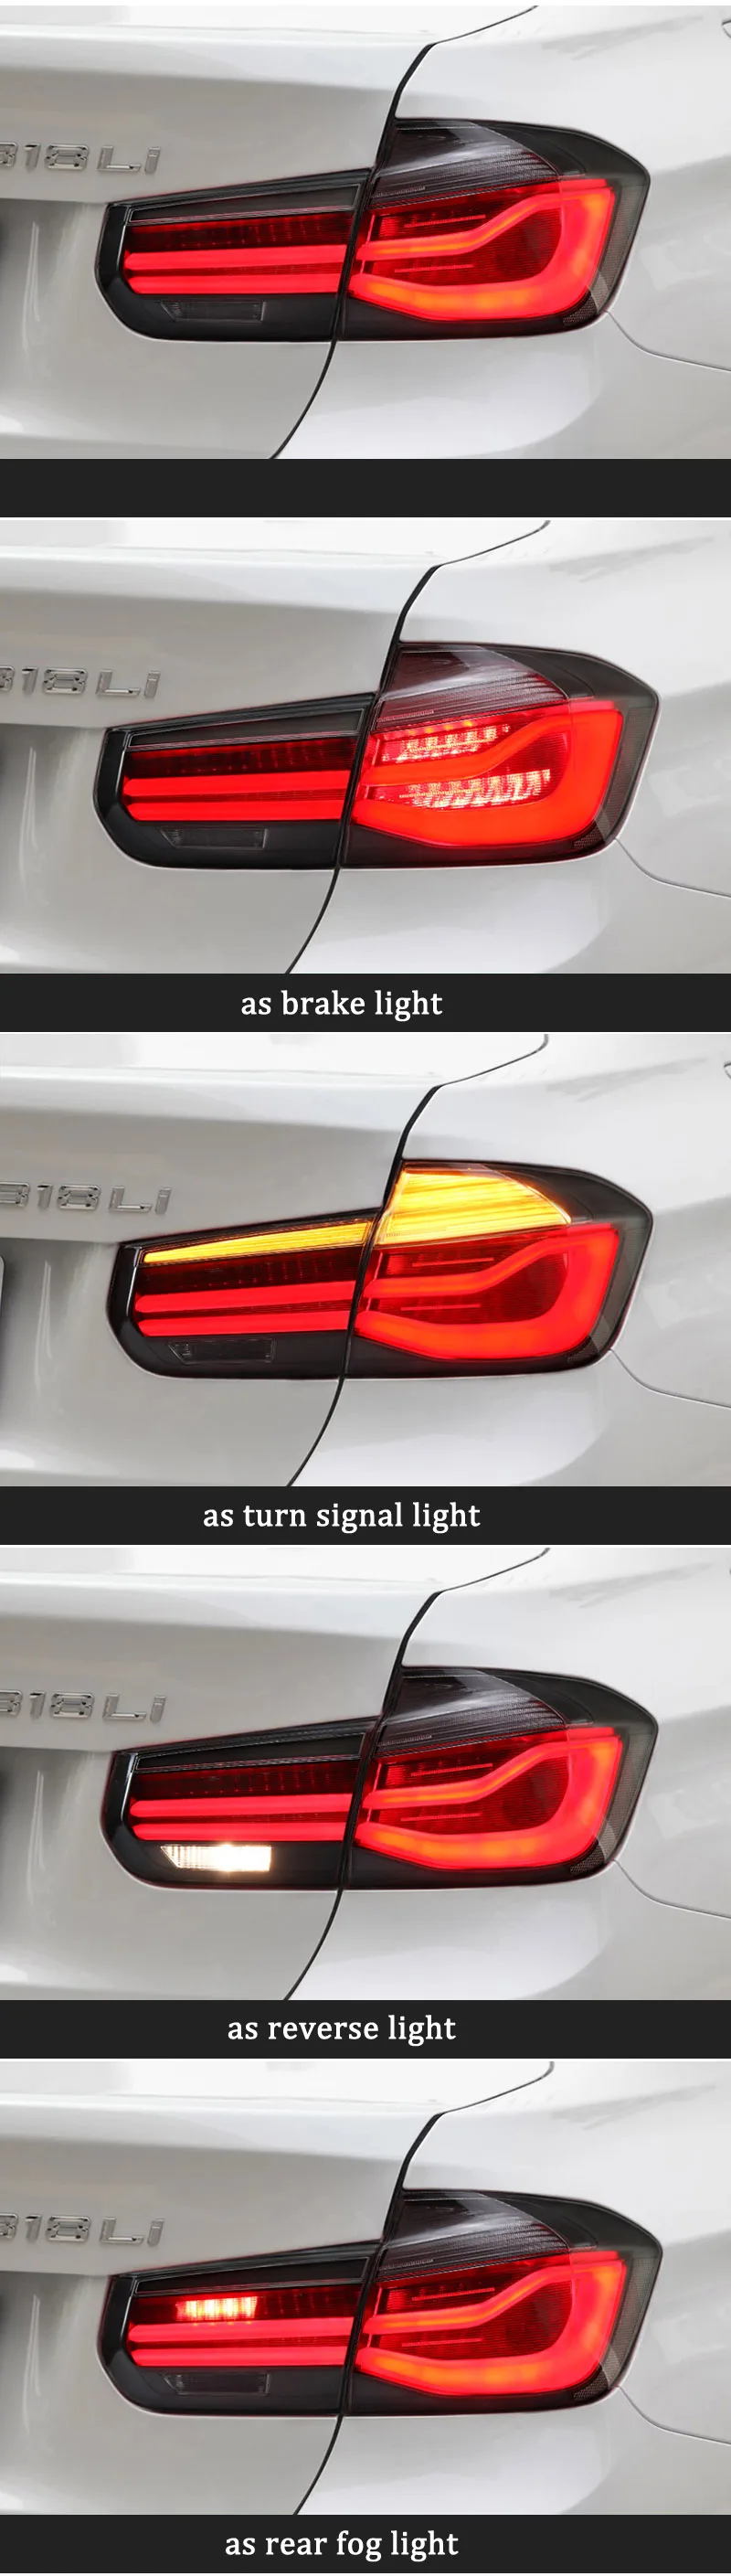 Задний противотуманный фонарь+ Тормозная лампа+ обратный+ Динамический сигнал поворота Автомобильный светодиодный задний фонарь для BMW F30 F35 320i 328i 2013